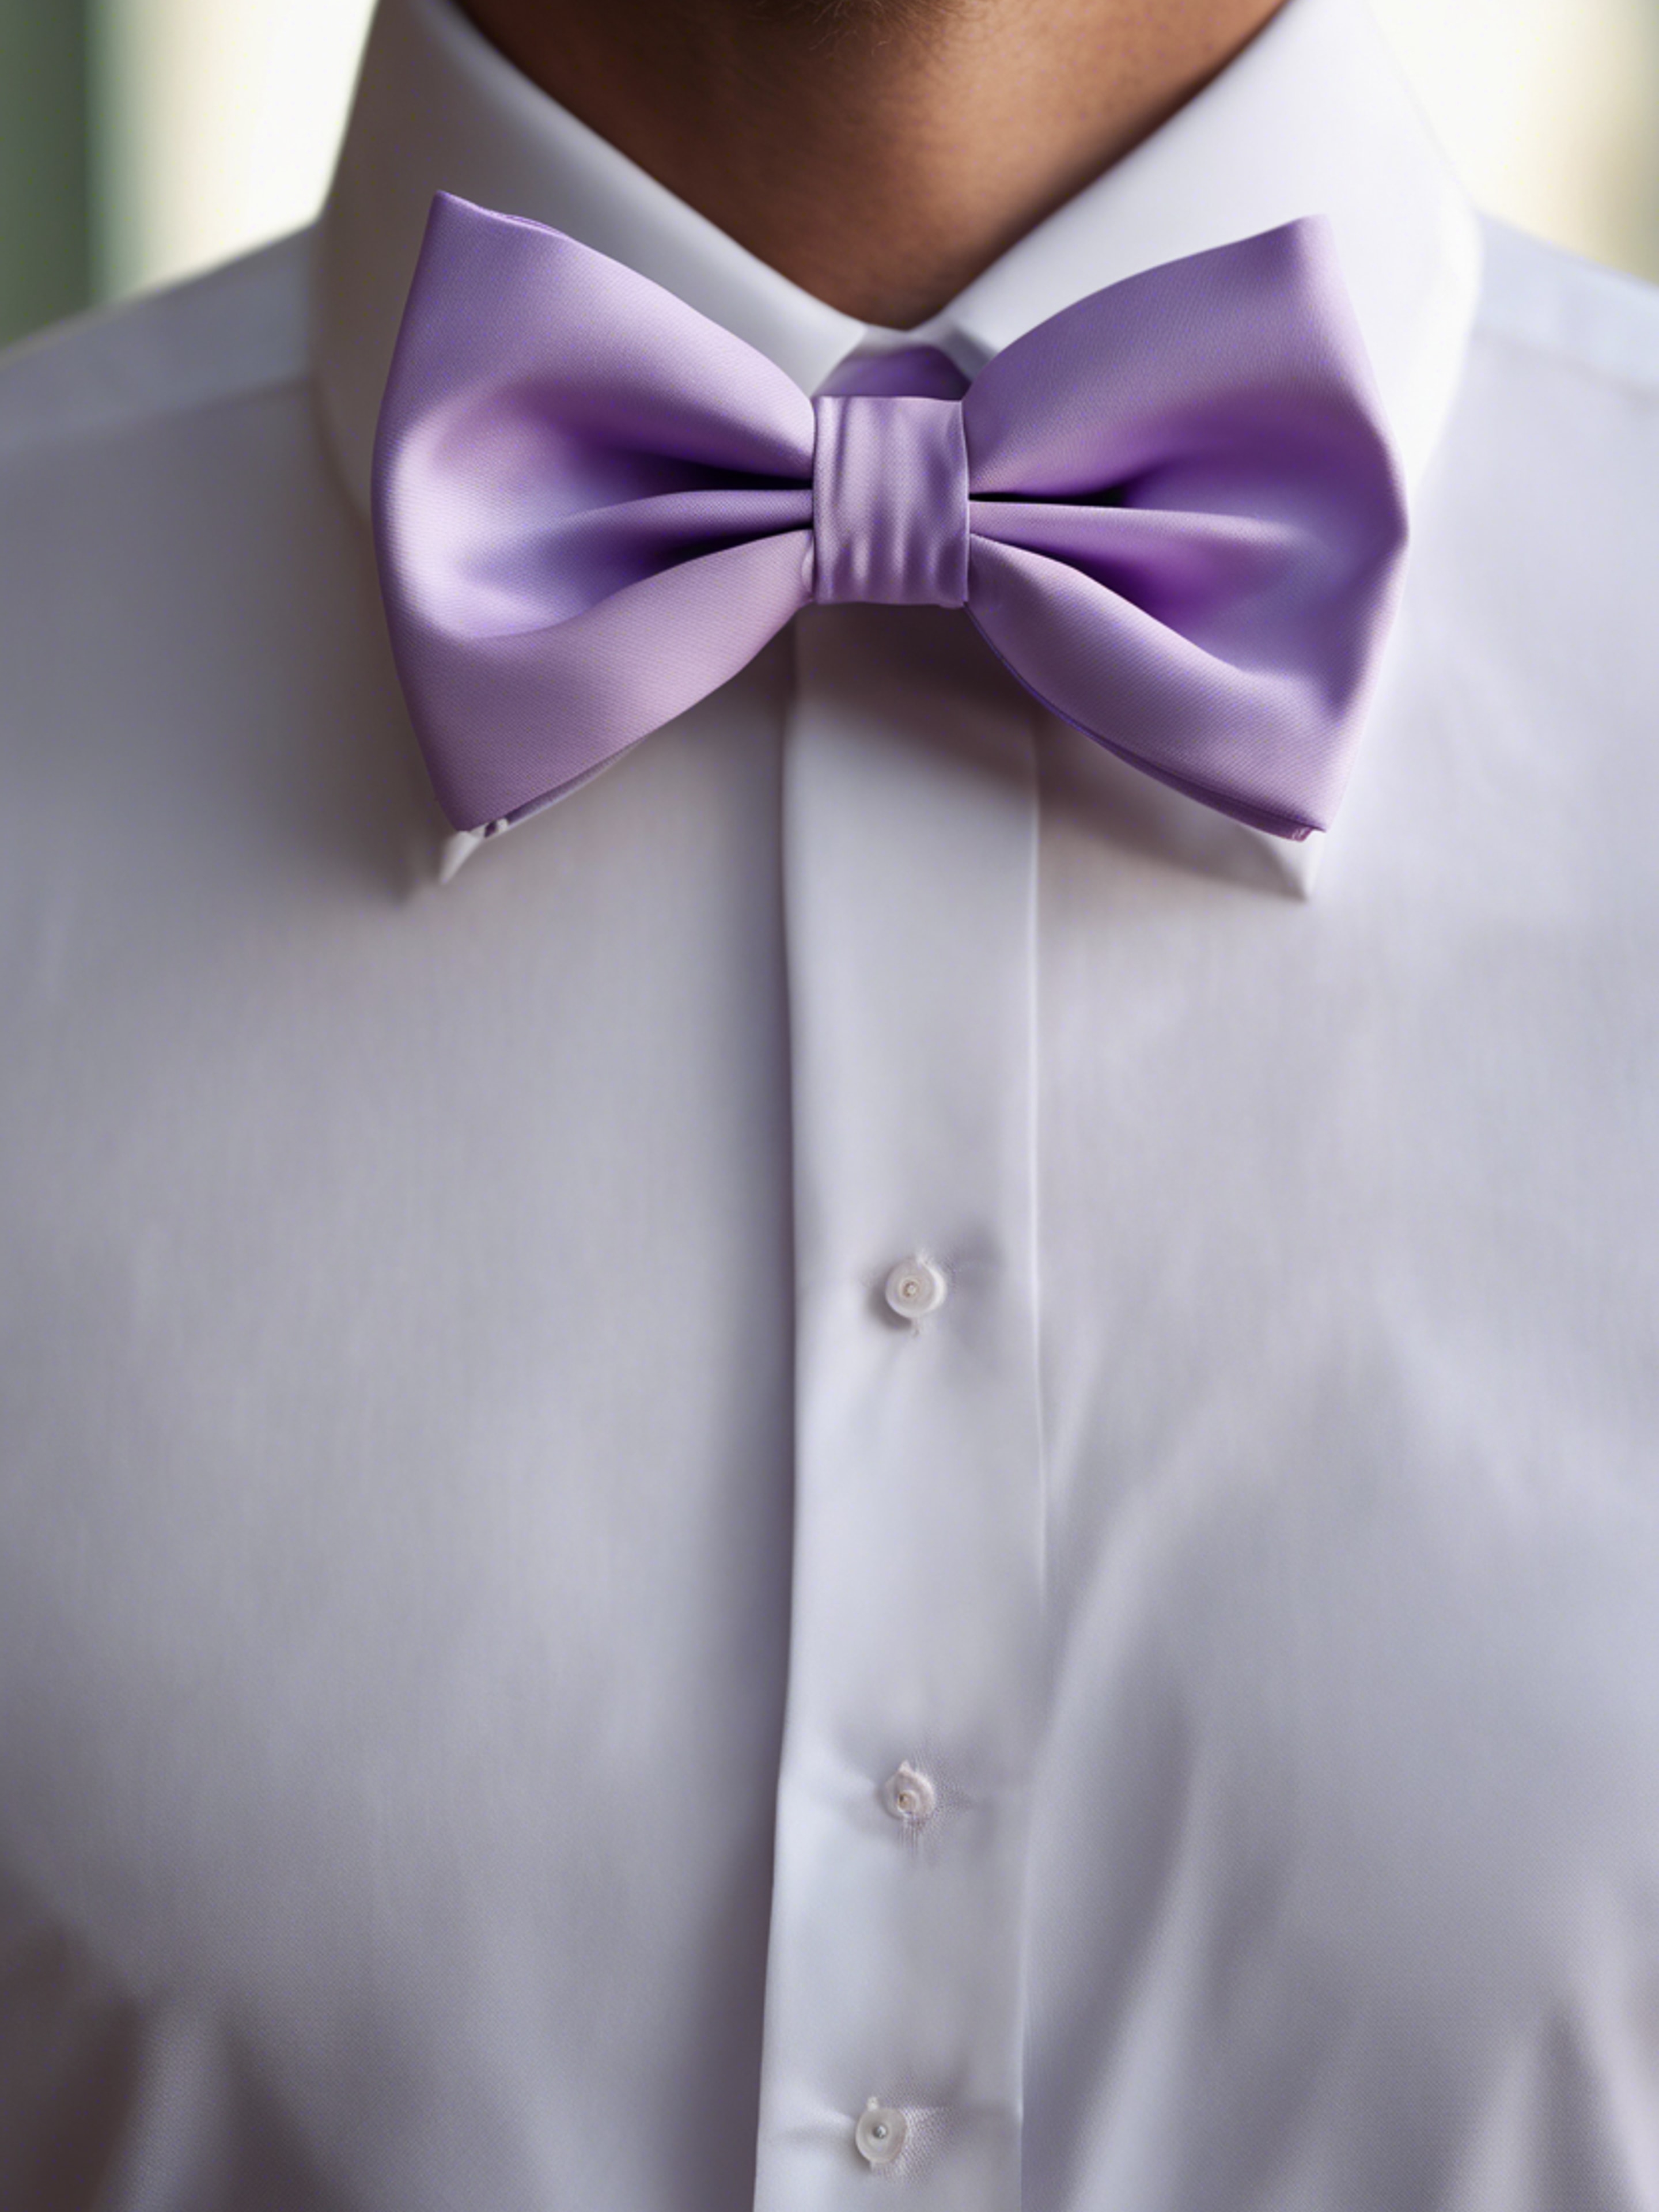 A preppy pastel purple bow tie on a crisp white shirt. Wallpaper[5e87c7412f5947d28f4c]